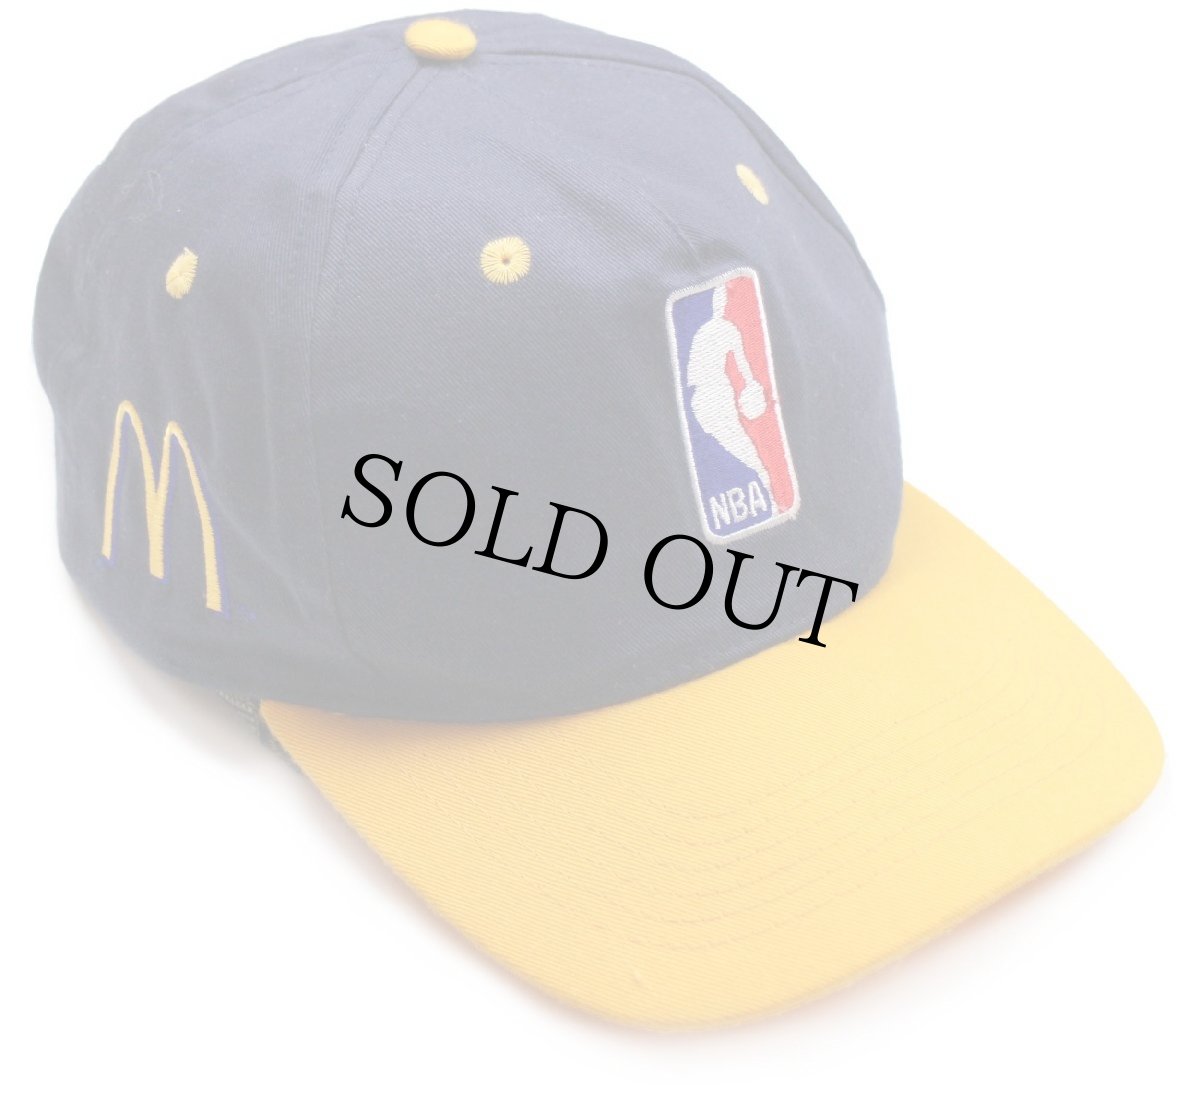 画像1: NBA×McDonald'sマクドナルド ロゴ刺繍 ツートン キャップ 紺×黄 (1)